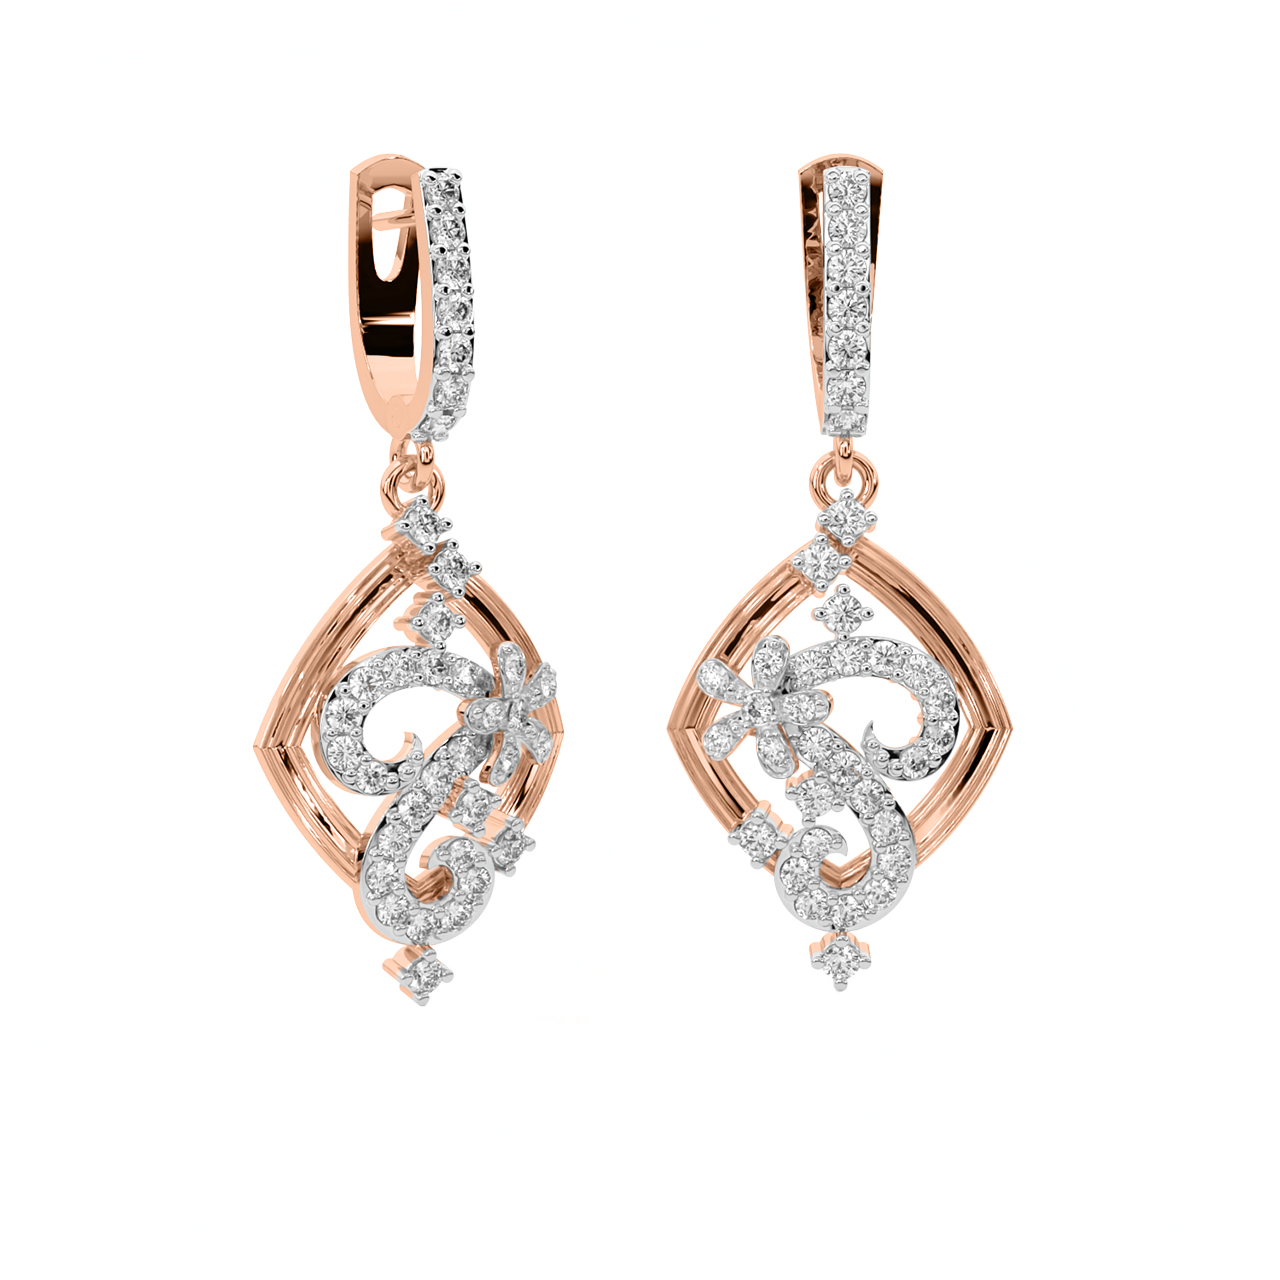 Lacy Reveal Diamond Earrings